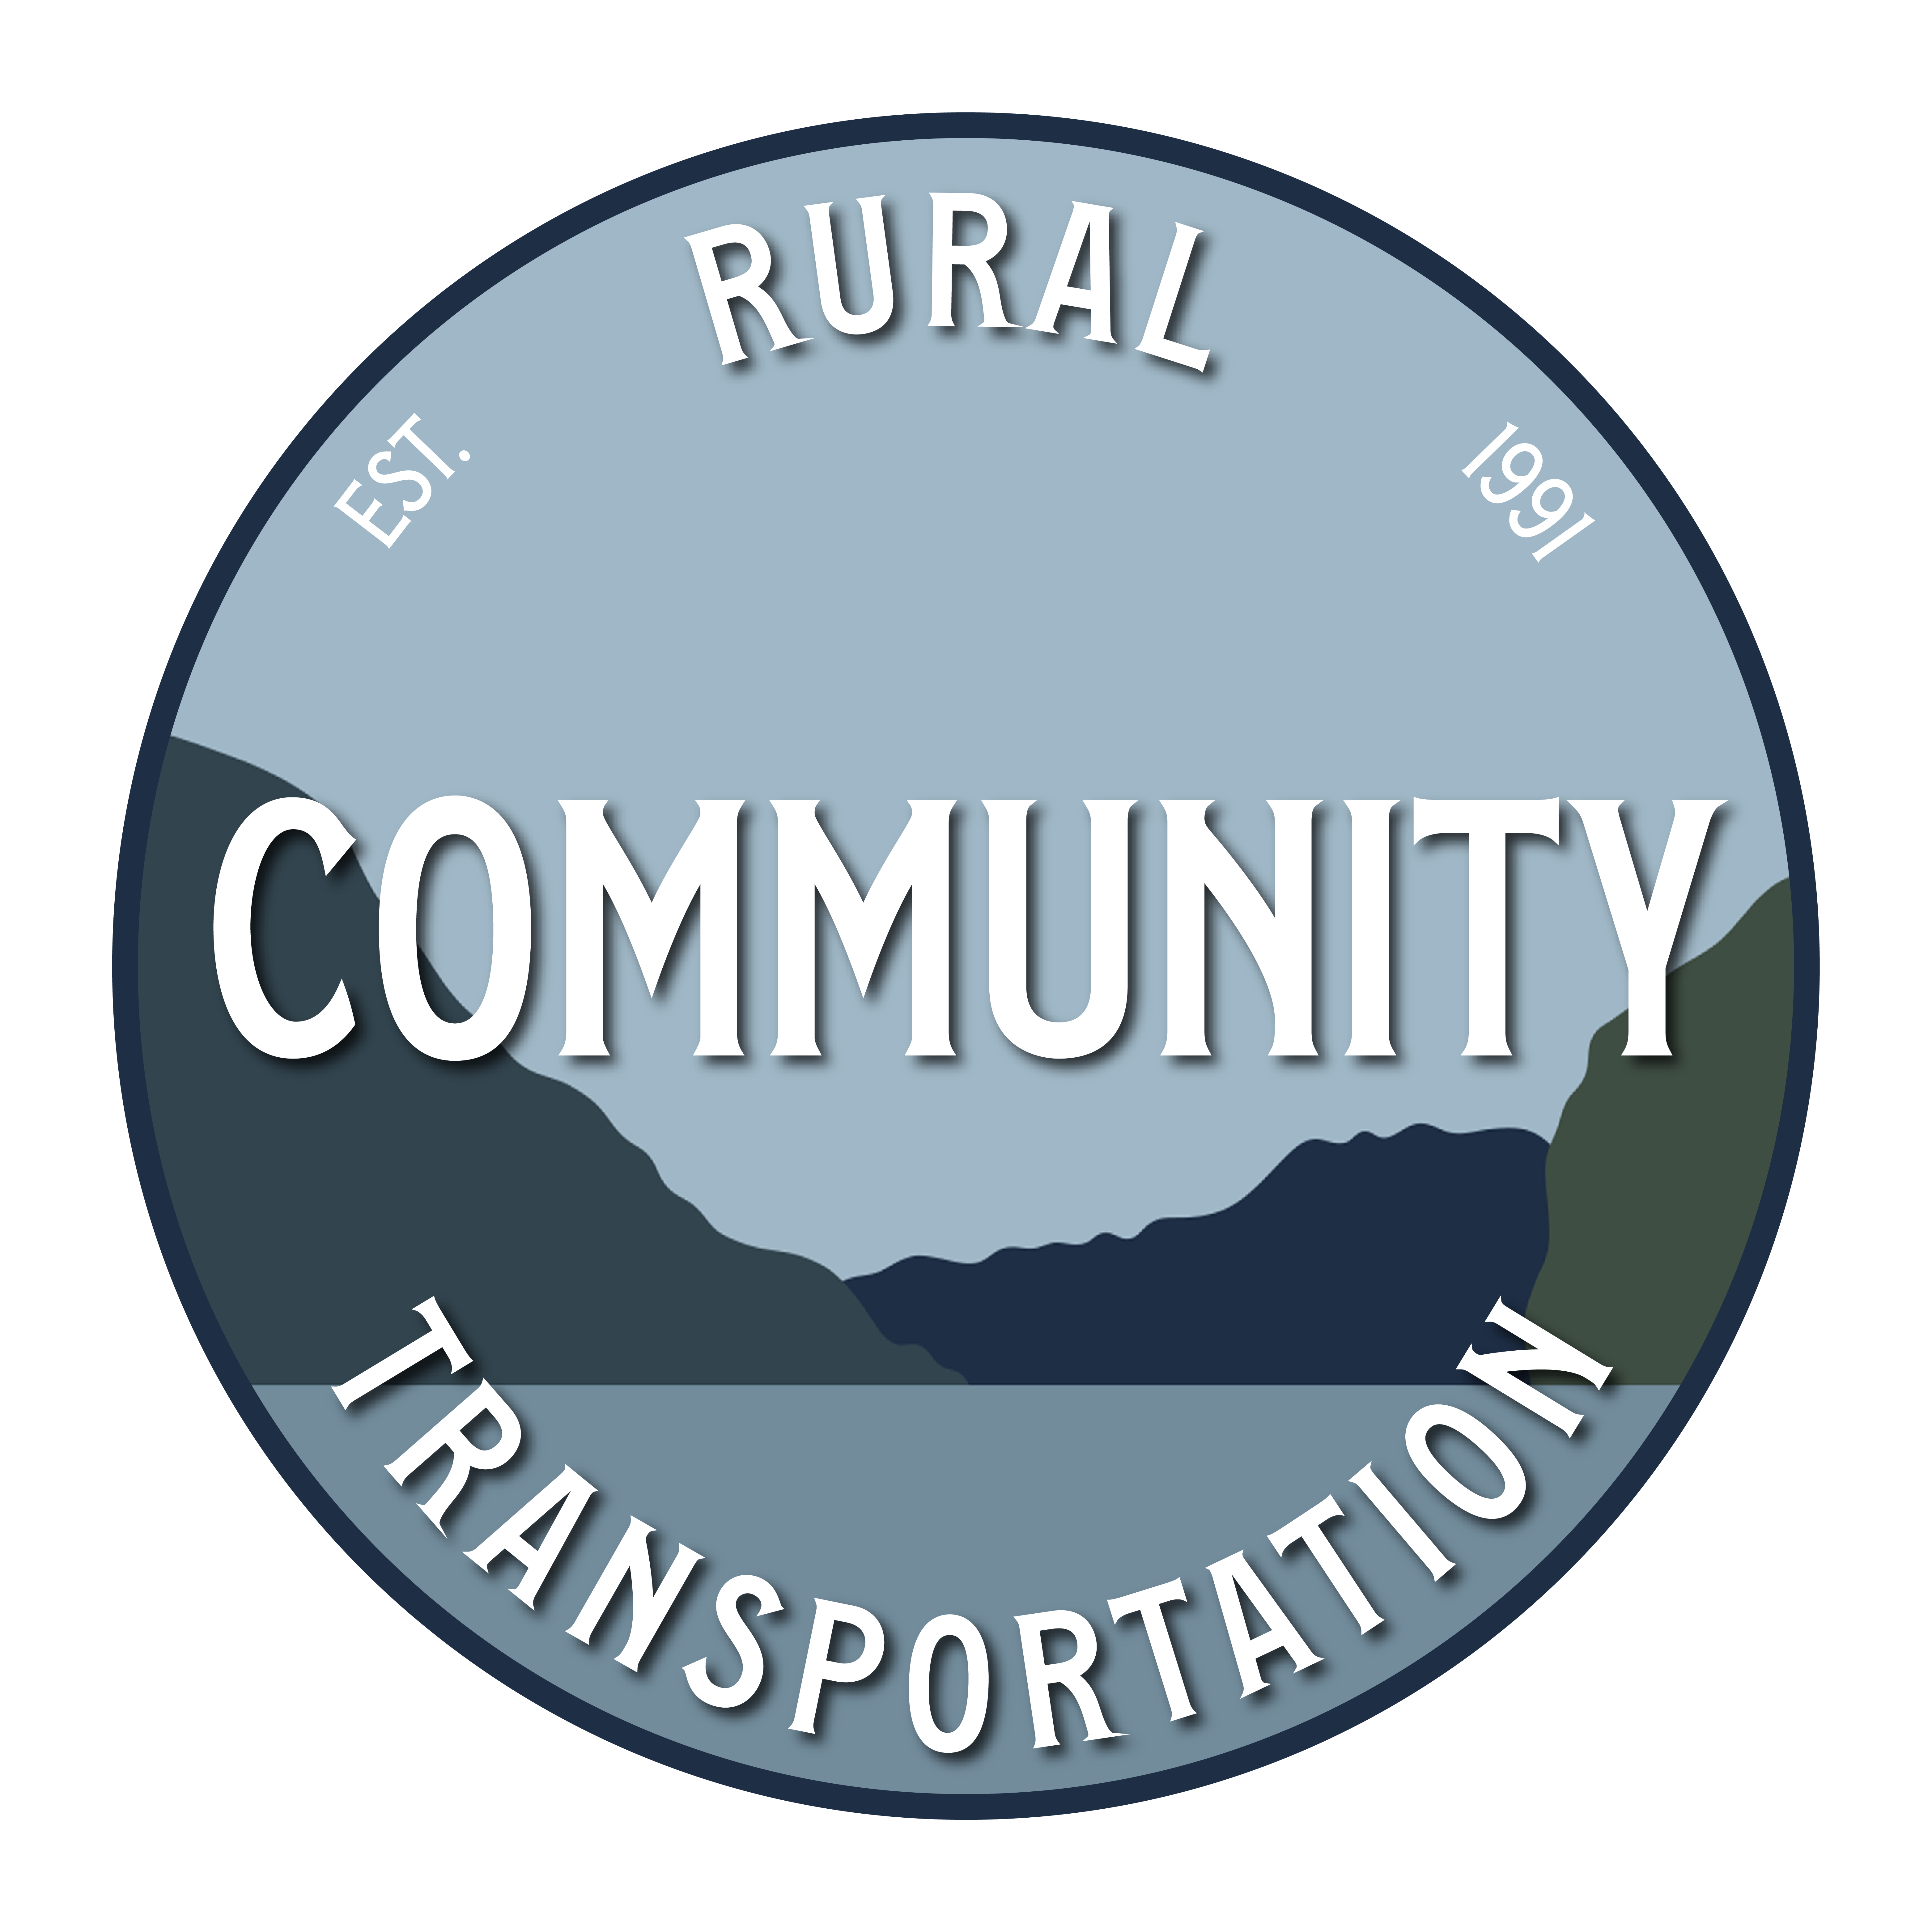 Rural Community Transportation Logo